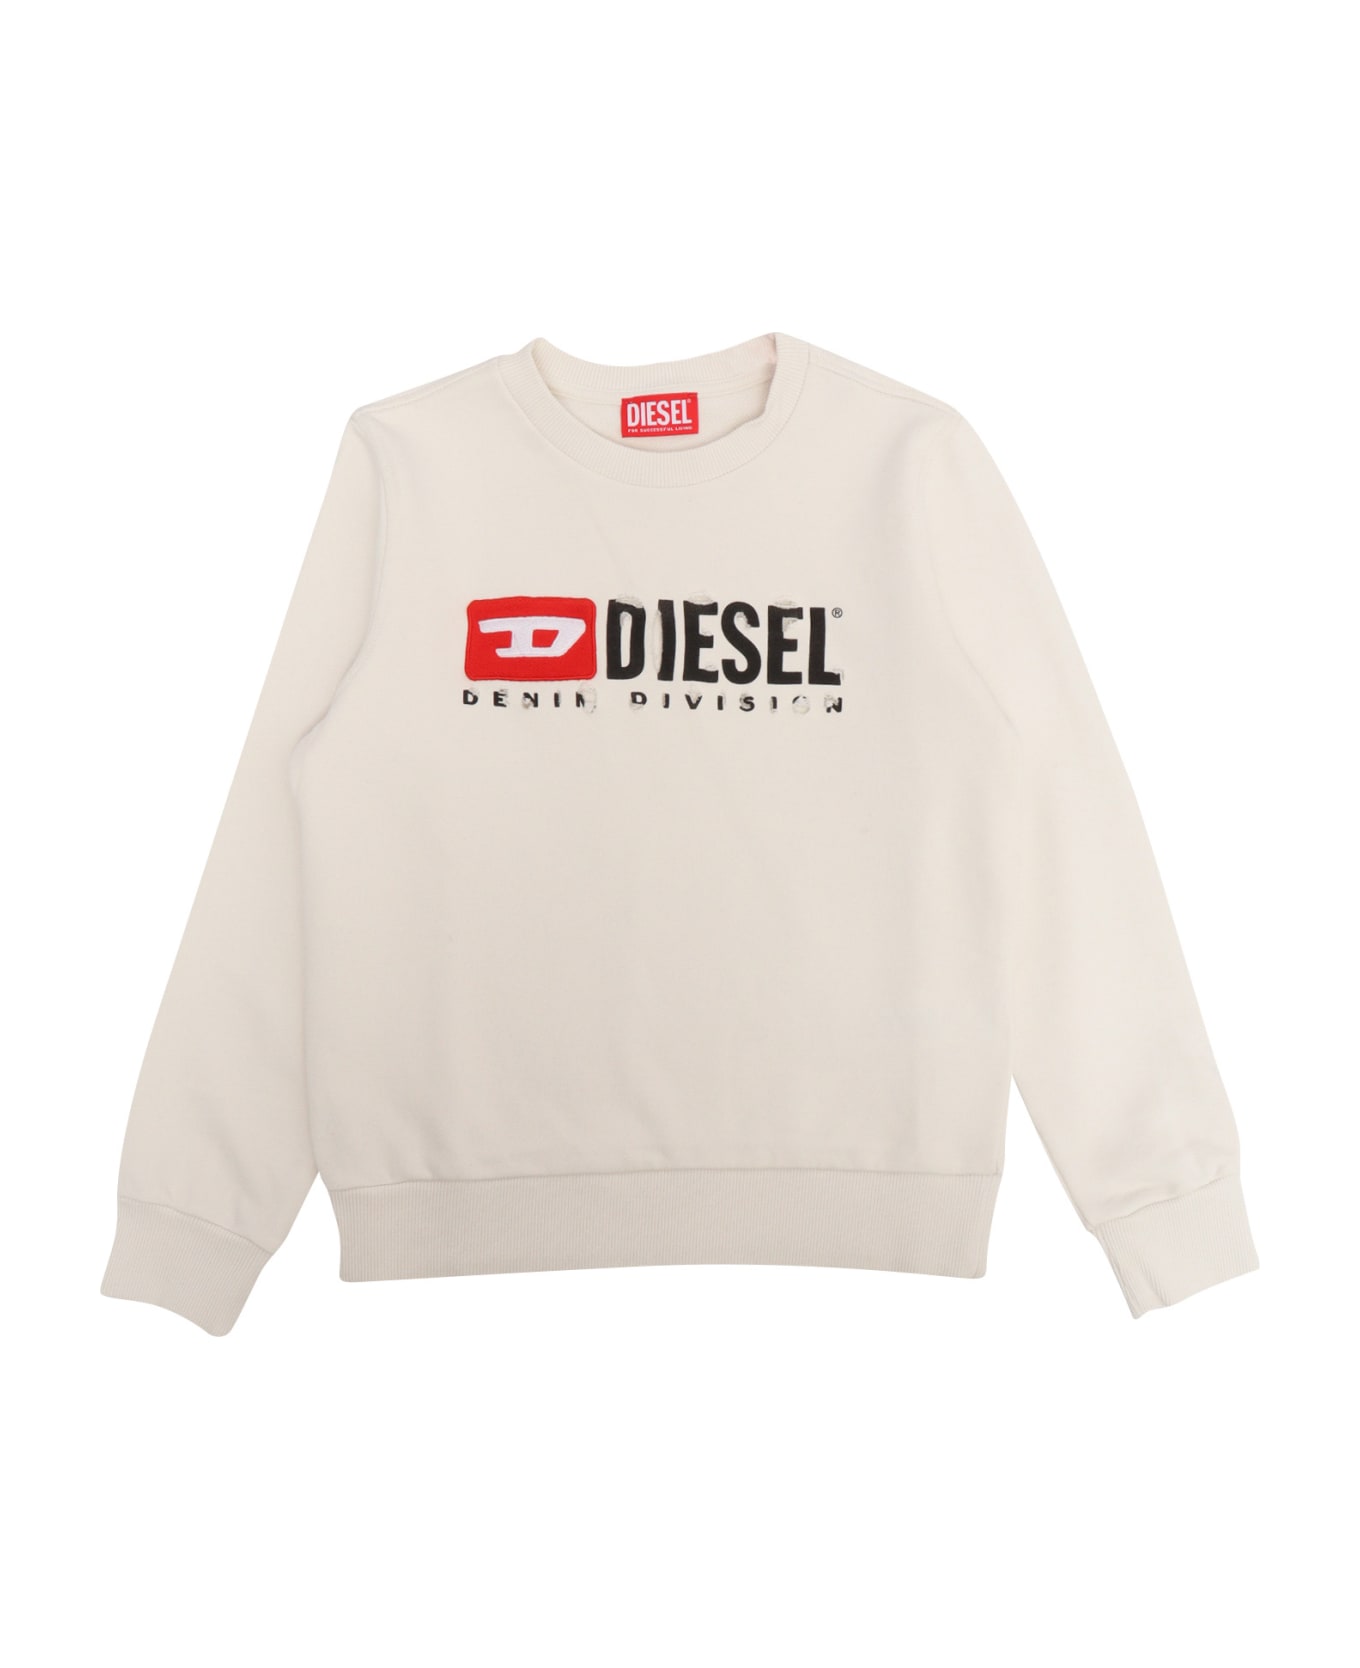 Diesel Children's Diesel Sweatshirt - GREY